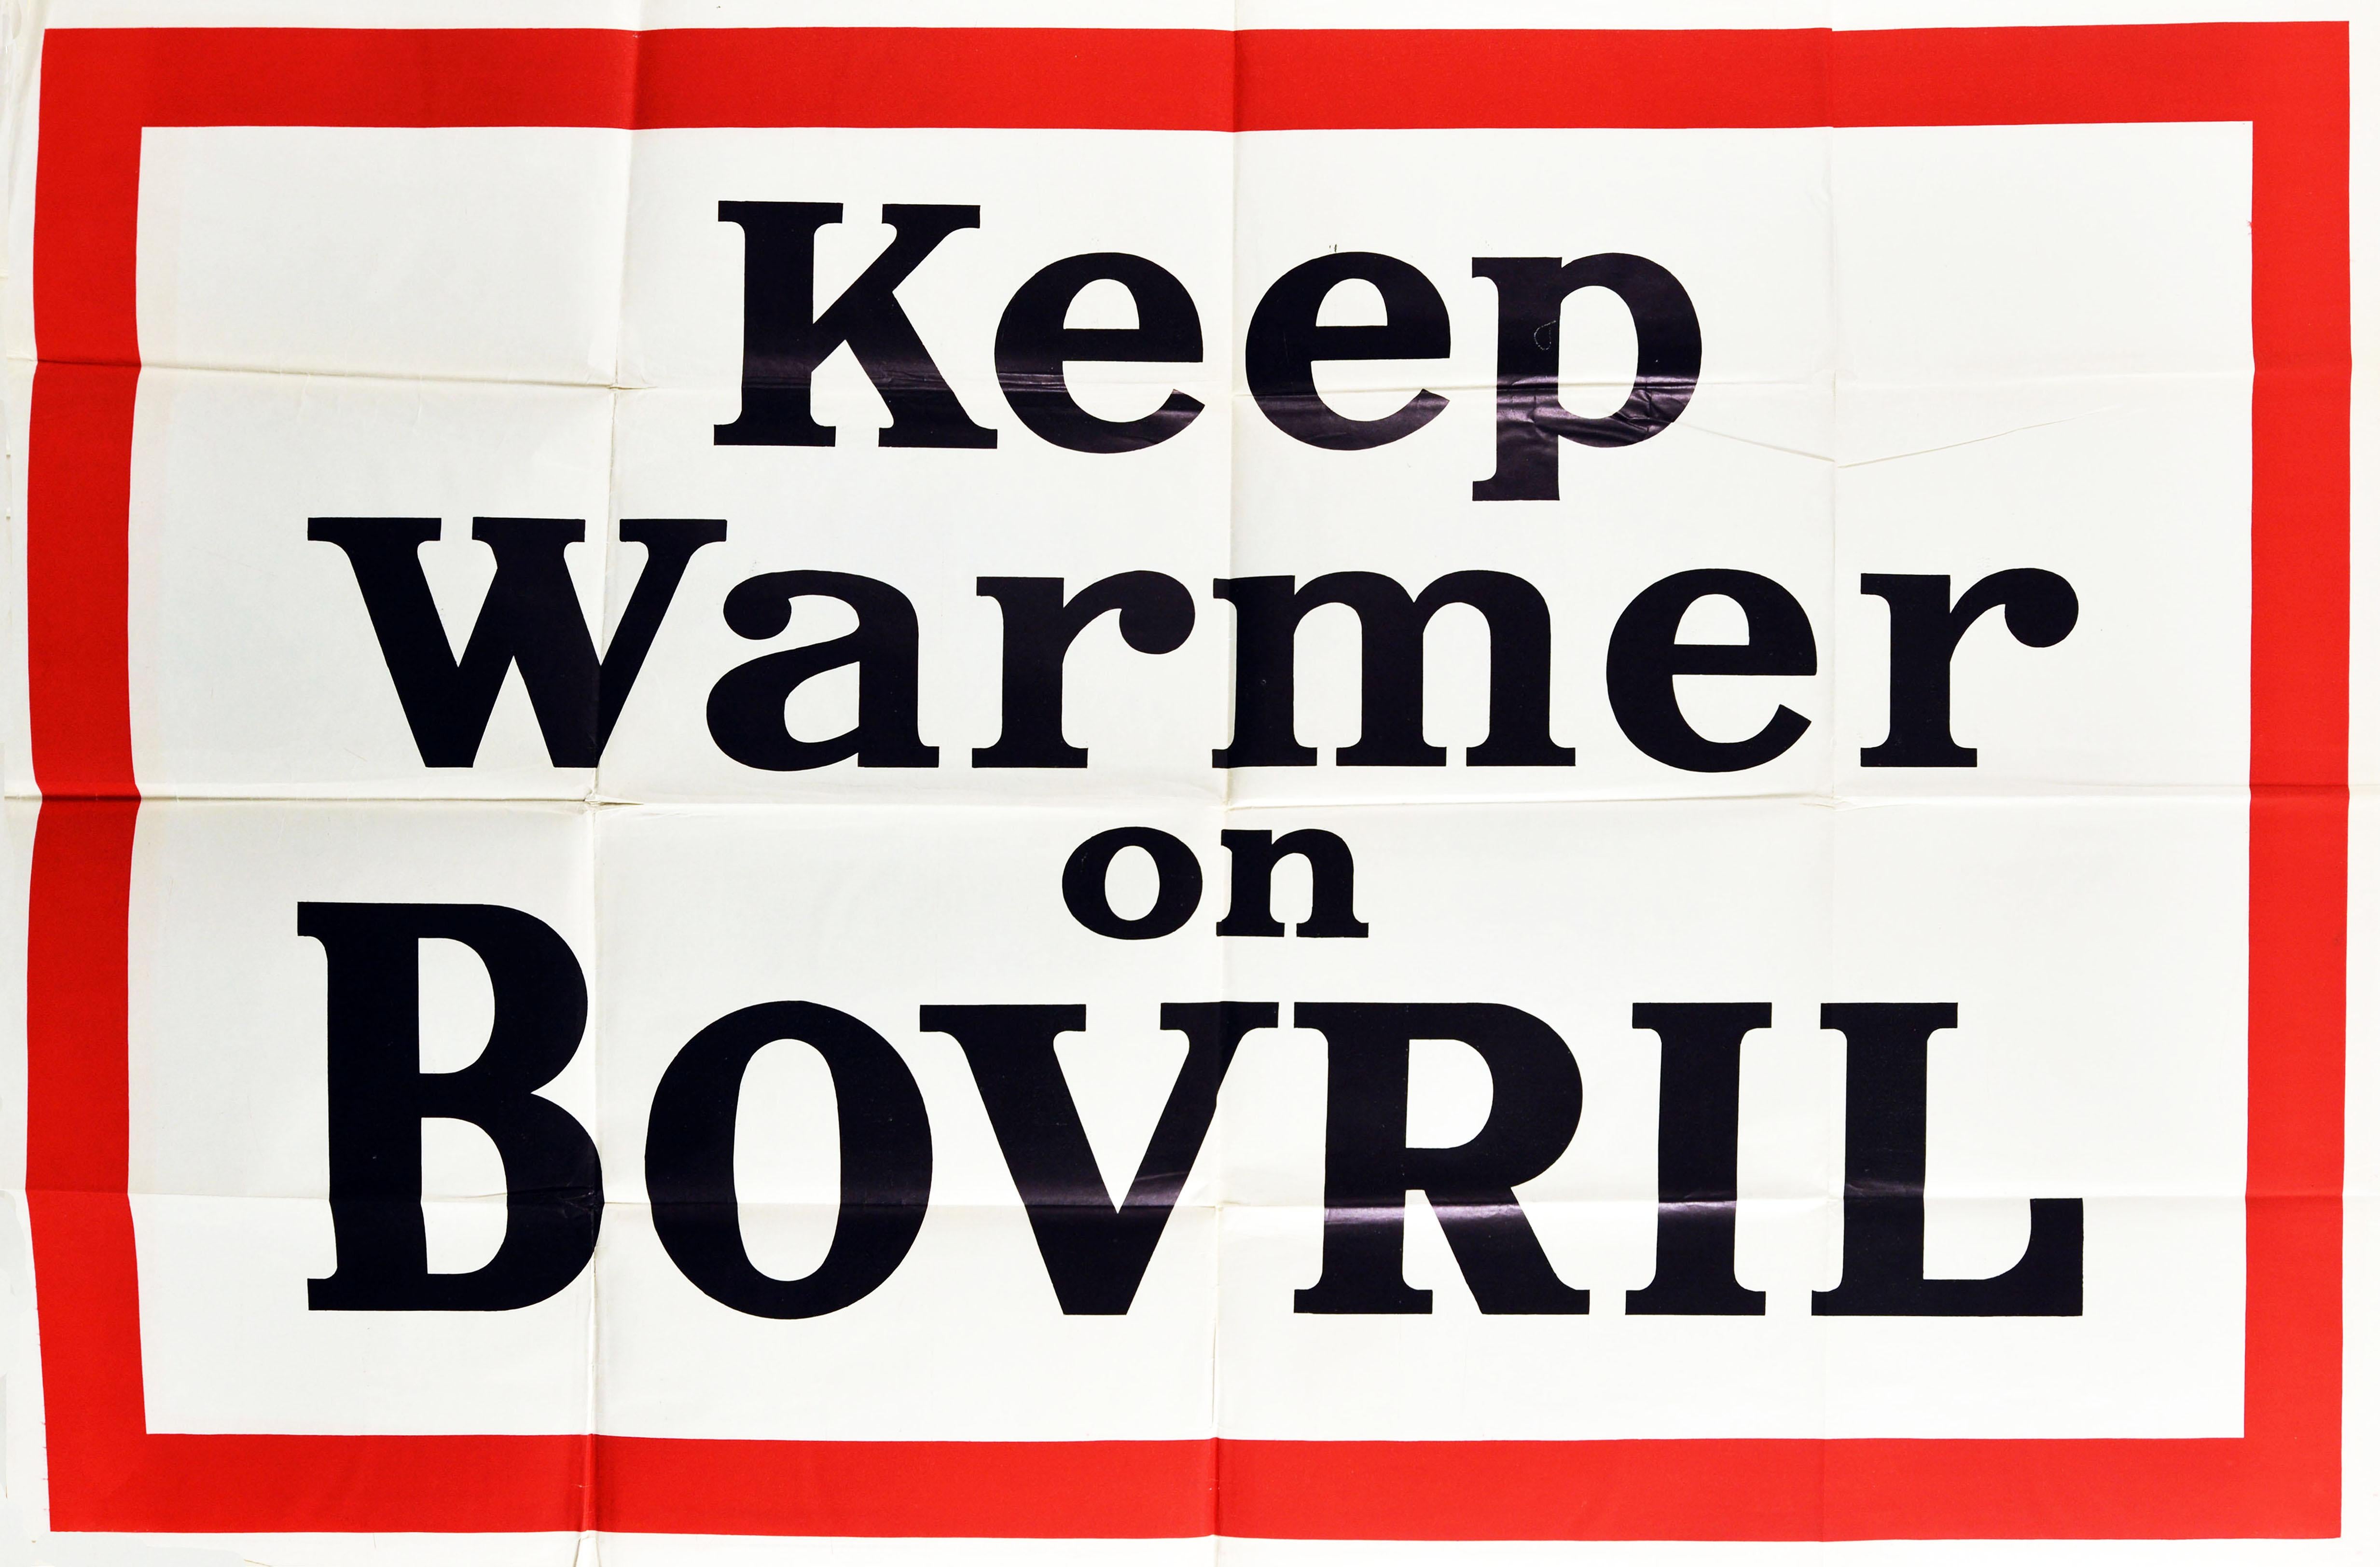 Affiche publicitaire vintage originale pour Bovril - Keep Warmer on Bovril - avec des lettres noires sur un fond blanc et un cadre rouge. Imprimée en Grande-Bretagne dans les années 1930, cette campagne utilise des jeux de mots et des calembours